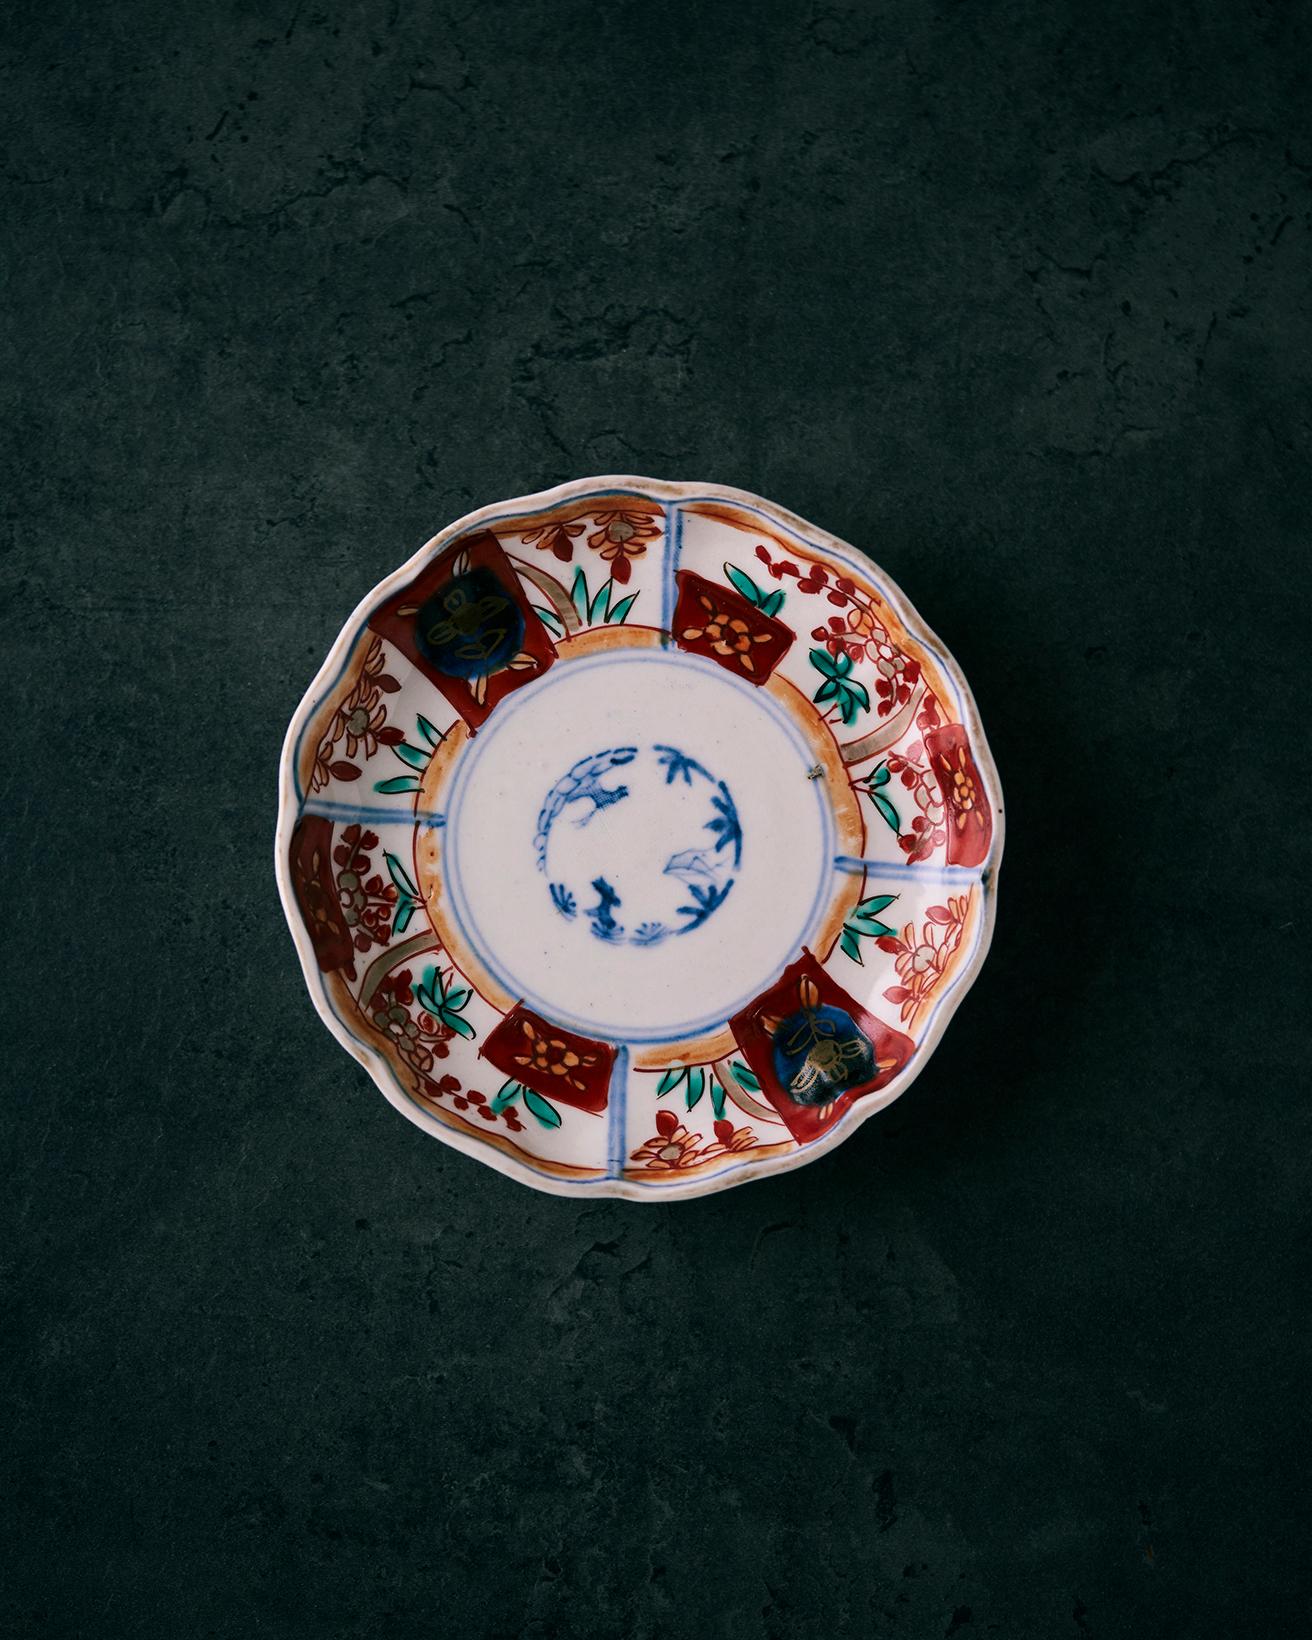 金沢へ旅した時に骨董屋さんで購入した古伊万里の豆皿です。パッと華やかな気分になります。旅先では毎回1つ骨董品を買って帰るのを自分へのお土産代わりにしています。